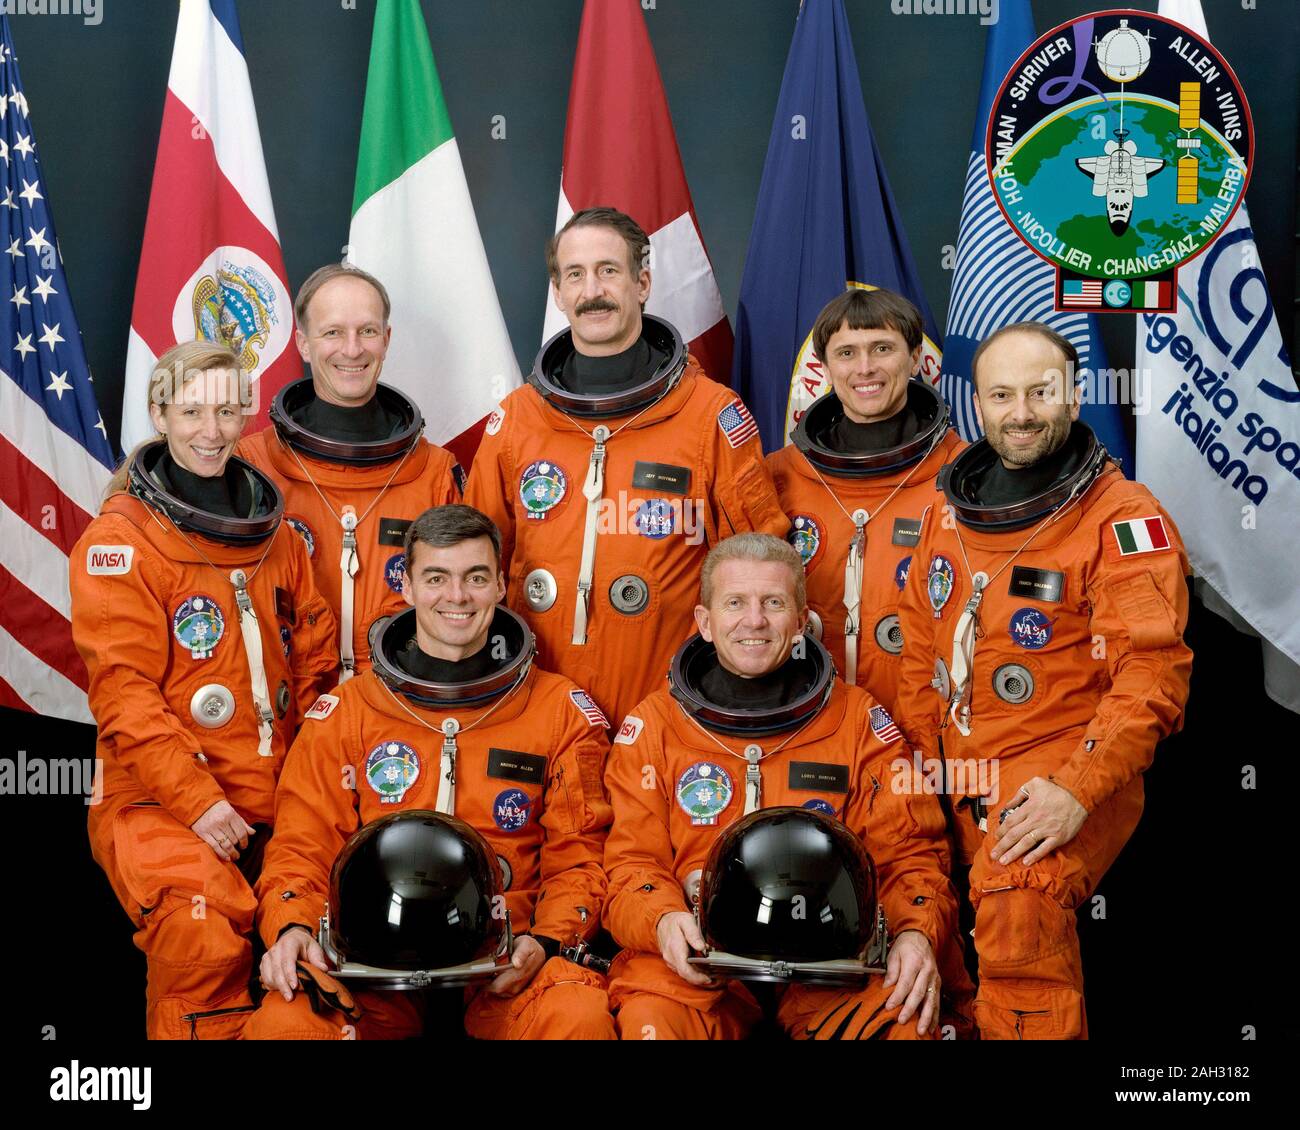 (Mai 1992) - - - Die Crew Mitglieder der STS-46 Mission pose mit sieben Fahnen, die Teilnahme auf dem Flug dar. Loren Shriver (vorne rechts) ist die Mission Commander; Andrew Allen (vorne links) ist Pilot. Andere sind (nach rechts) Marsha Ivins, Mission Specialist links; Claude Nicollier, der die Europäische Weltraumorganisation (ESA); Jeffrey Hoffman, Nutzlast Commander; Franklin Chang-Diaz, Mission Specialist, und Franco Malerba, Fliegen für die Italienische Raumfahrtagentur (ASI). Die Flaggen, links nach rechts, sind die Vereinigten Staaten von Amerika, Costa Rica (Chang's Native Land) Stockfoto